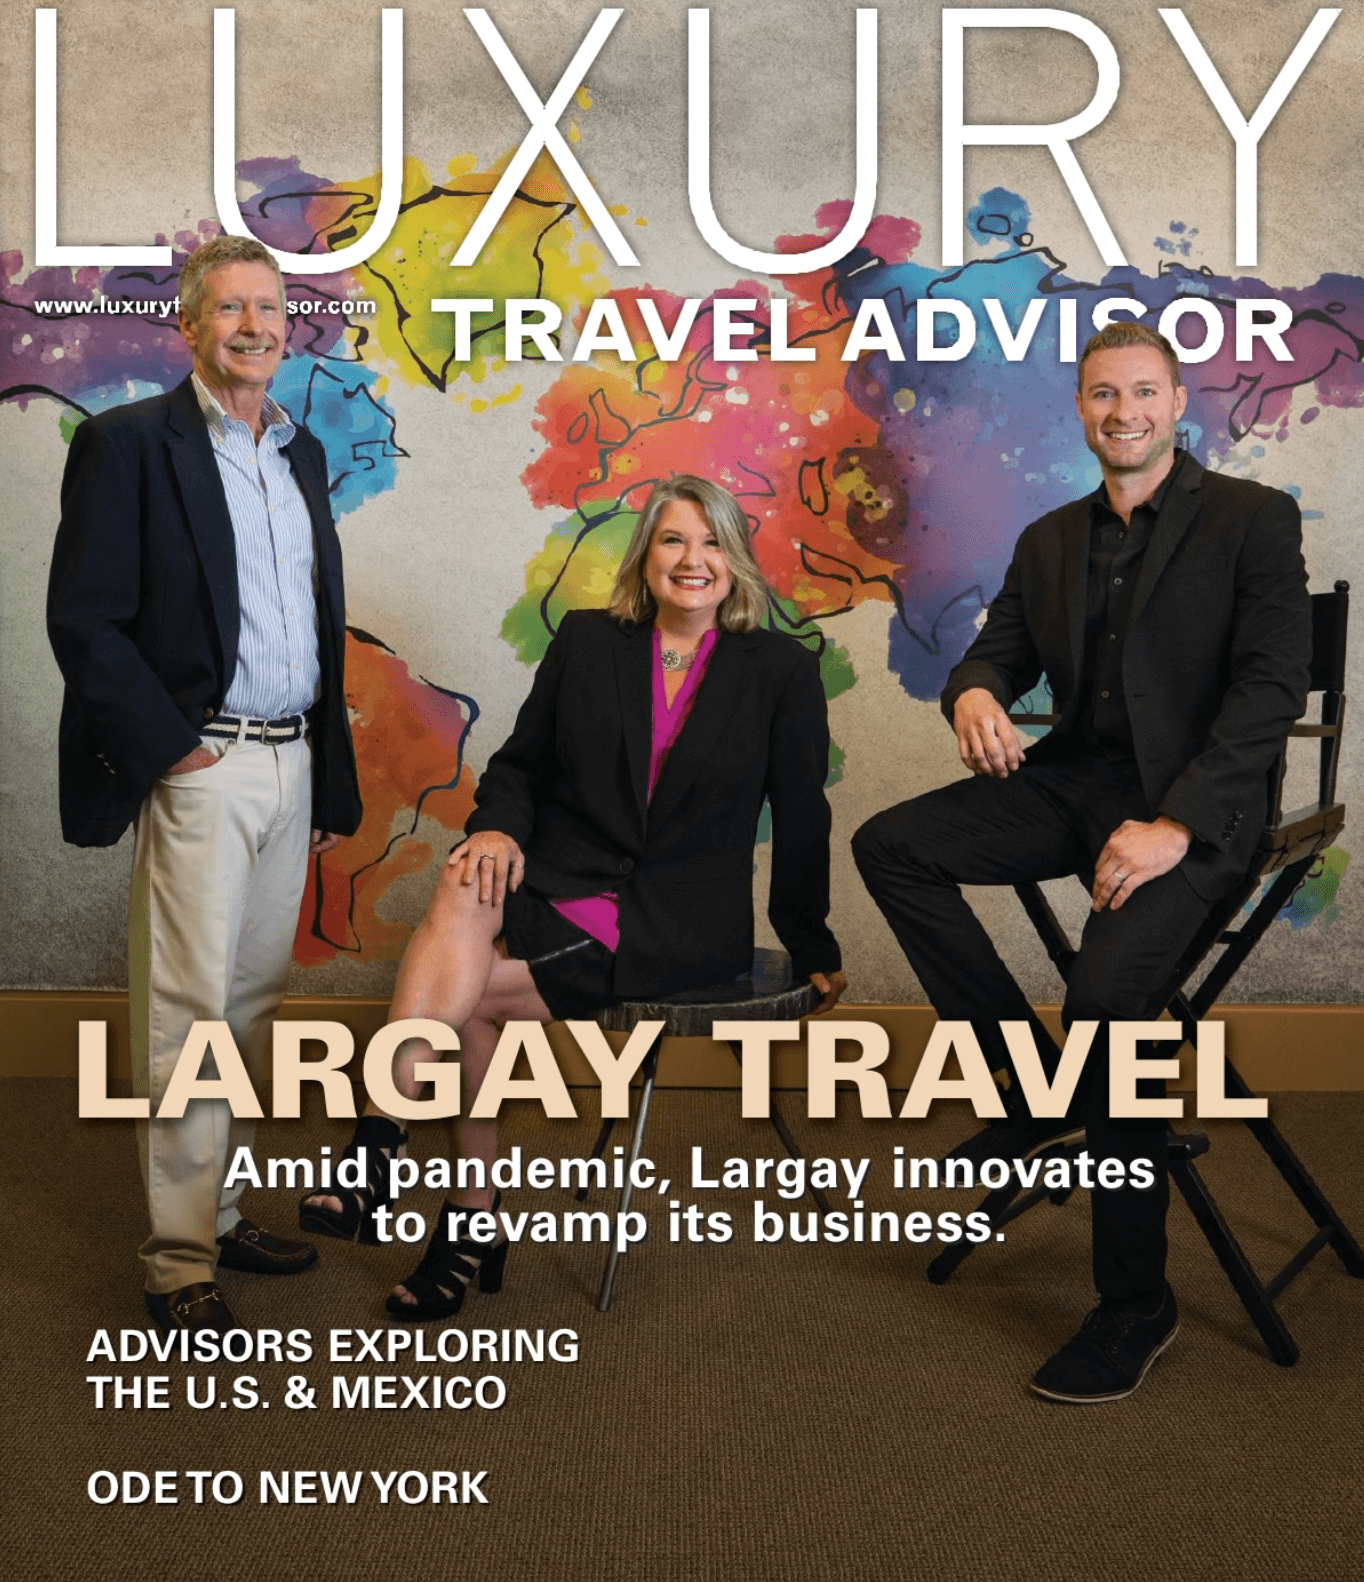 luxury travel advisor courses